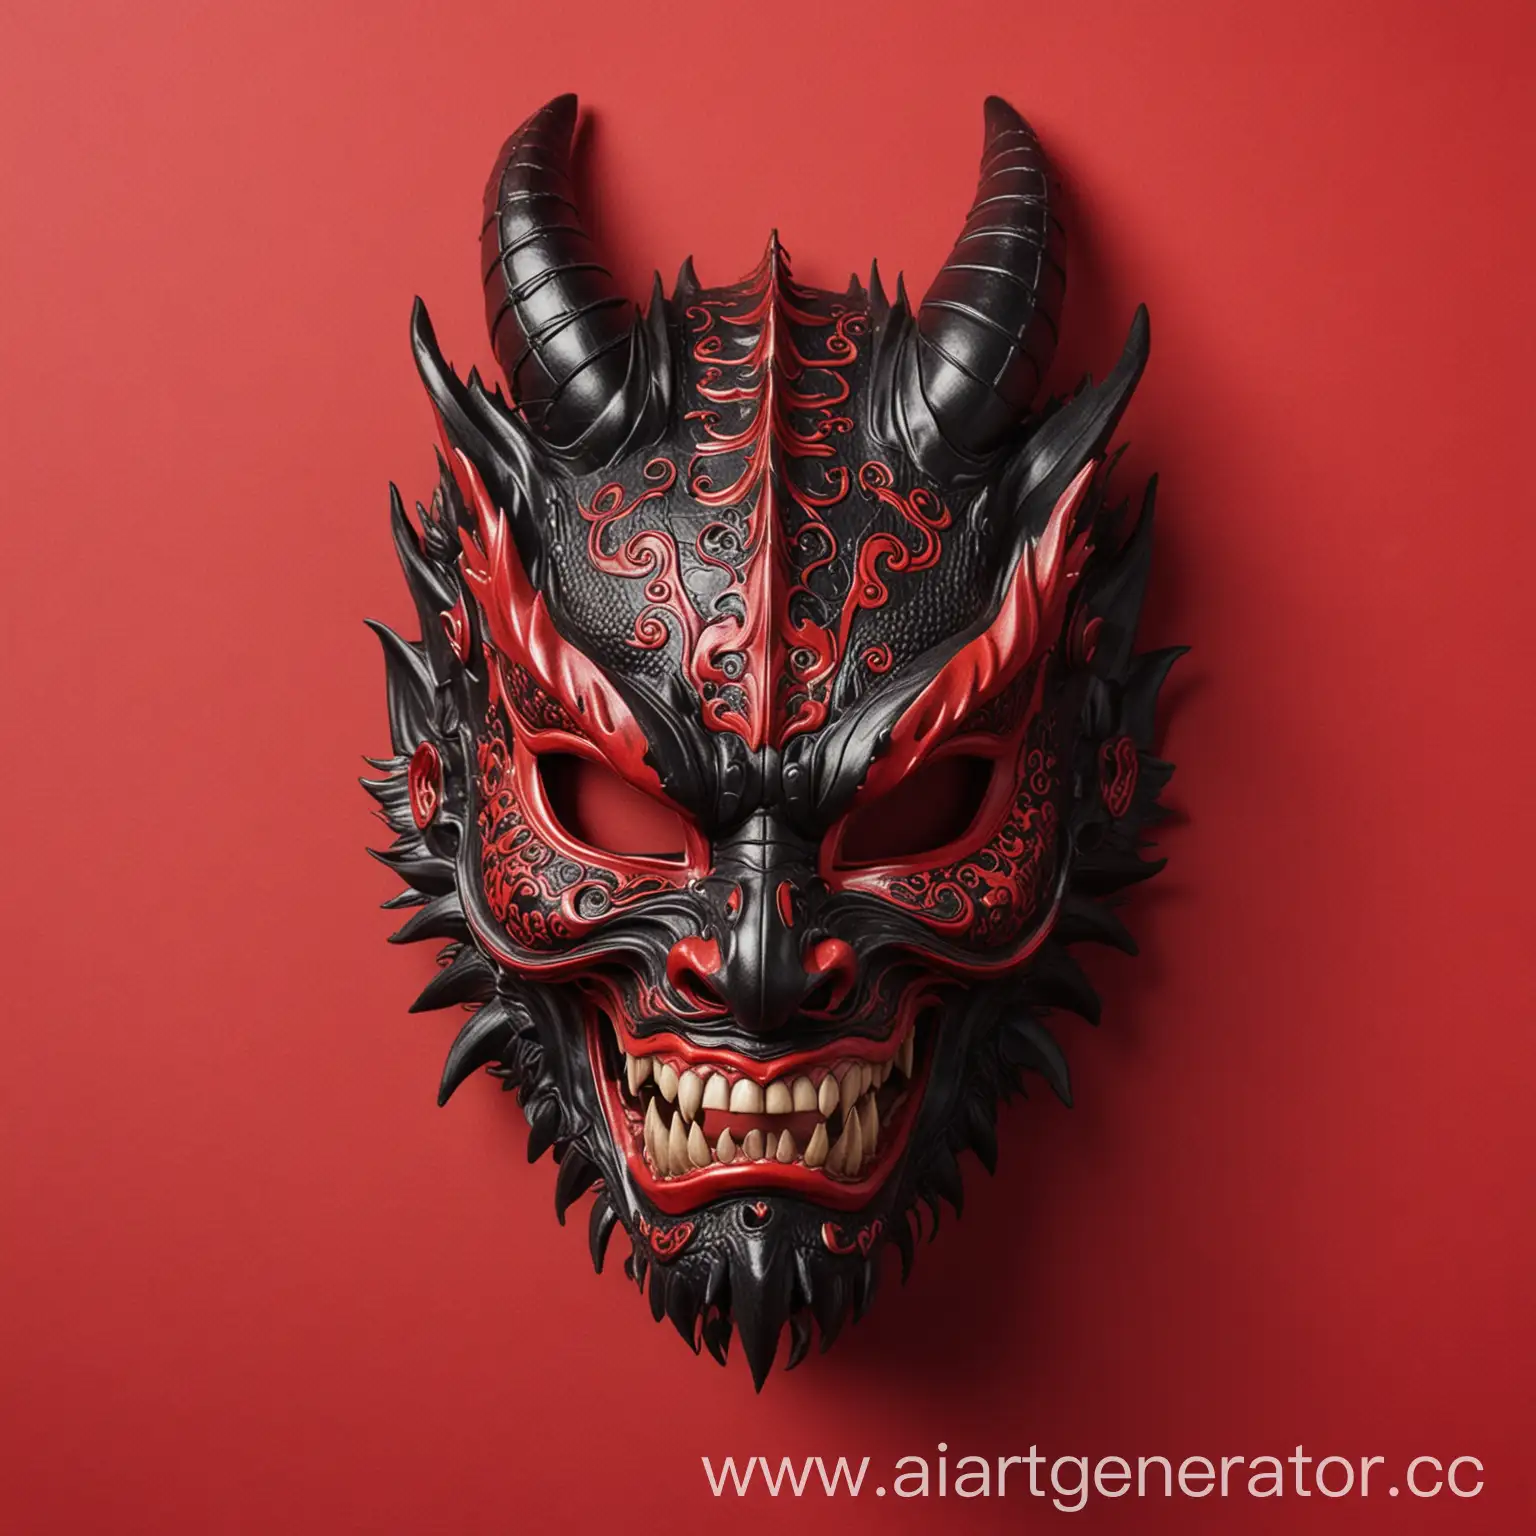 черная,японская маска дракона на красном фоне
